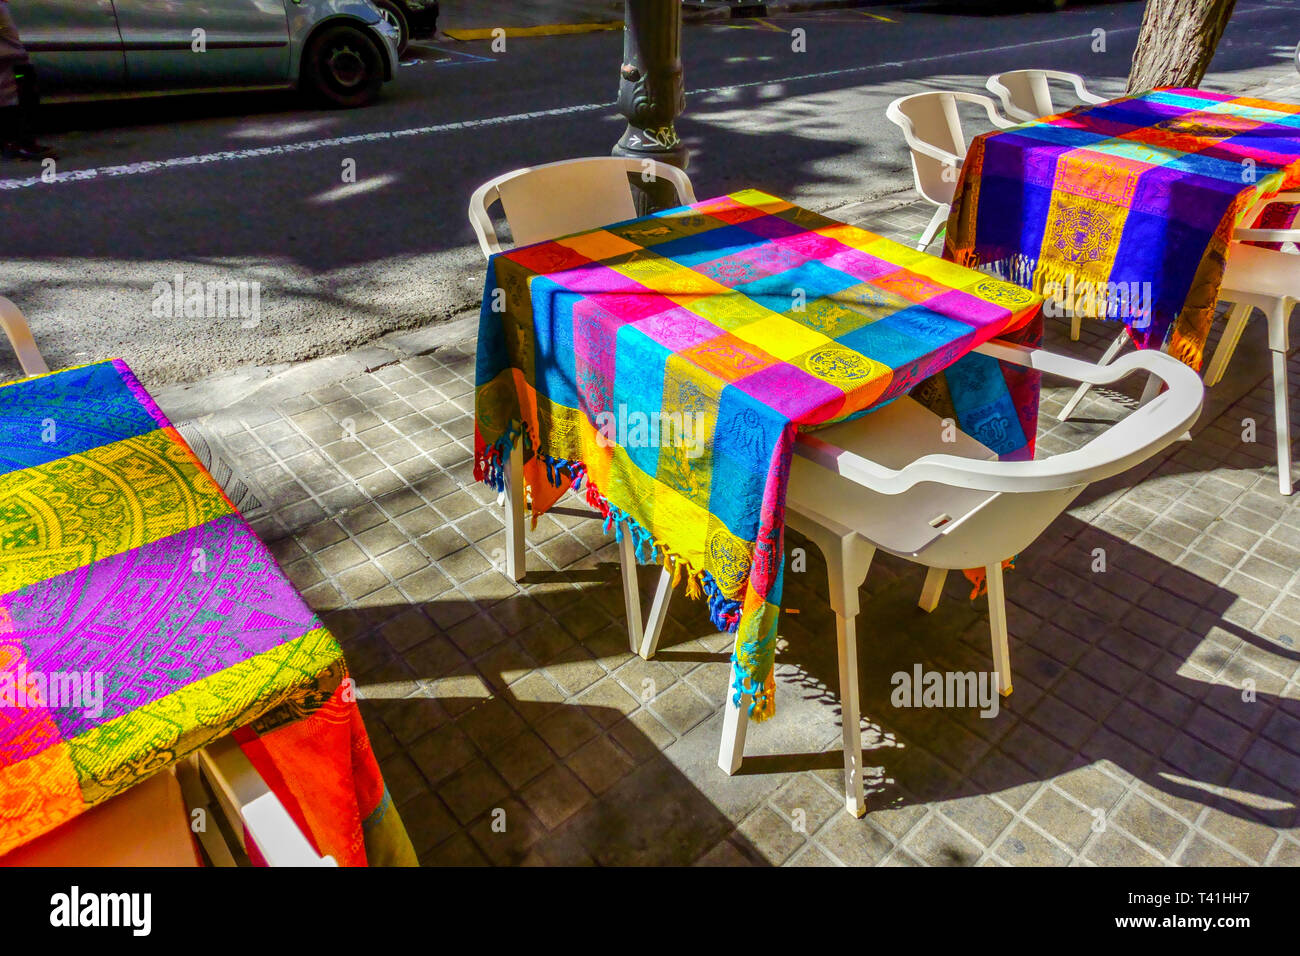 Couvertures colorées sur les tables Valencia Street Bar Ruzafa Valencia Russafa District trottoir à l'heure du déjeuner Bar espagnol Russafa Valencia Espagne Europe City Banque D'Images